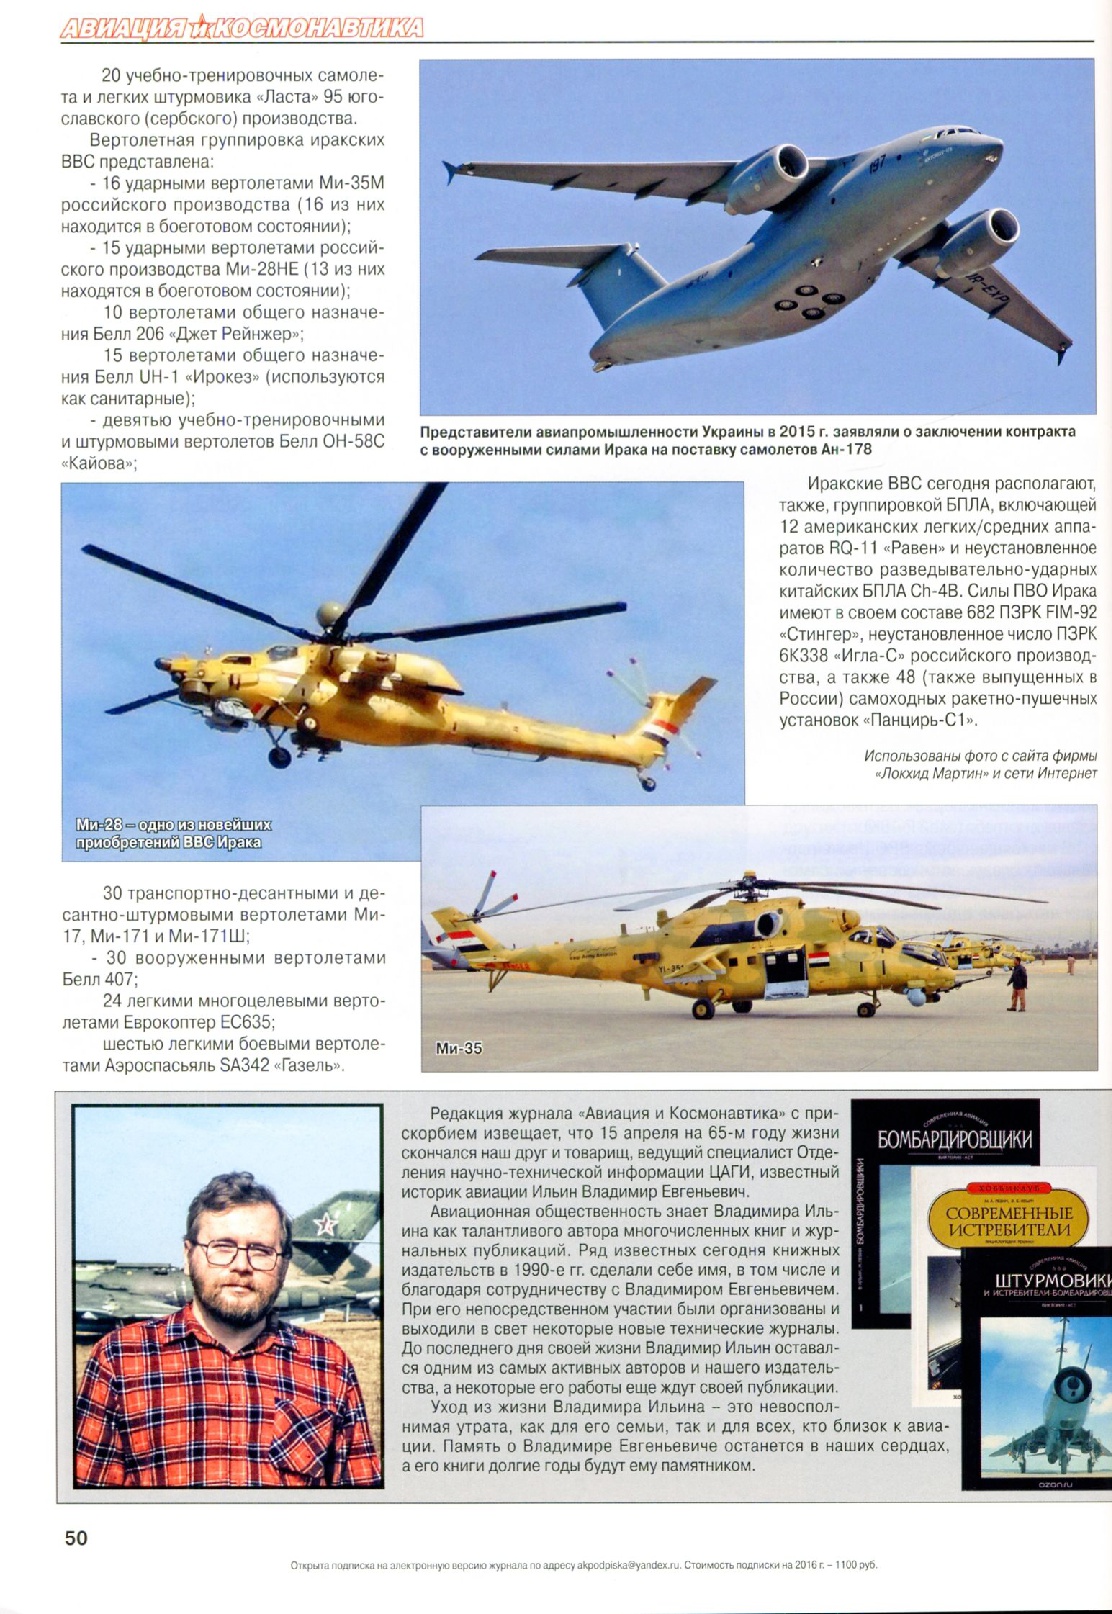 وصول طائرات روسية مقاتلة جديدة خلال اسابيع - صفحة 2 27240748392_cf75a42d5c_o